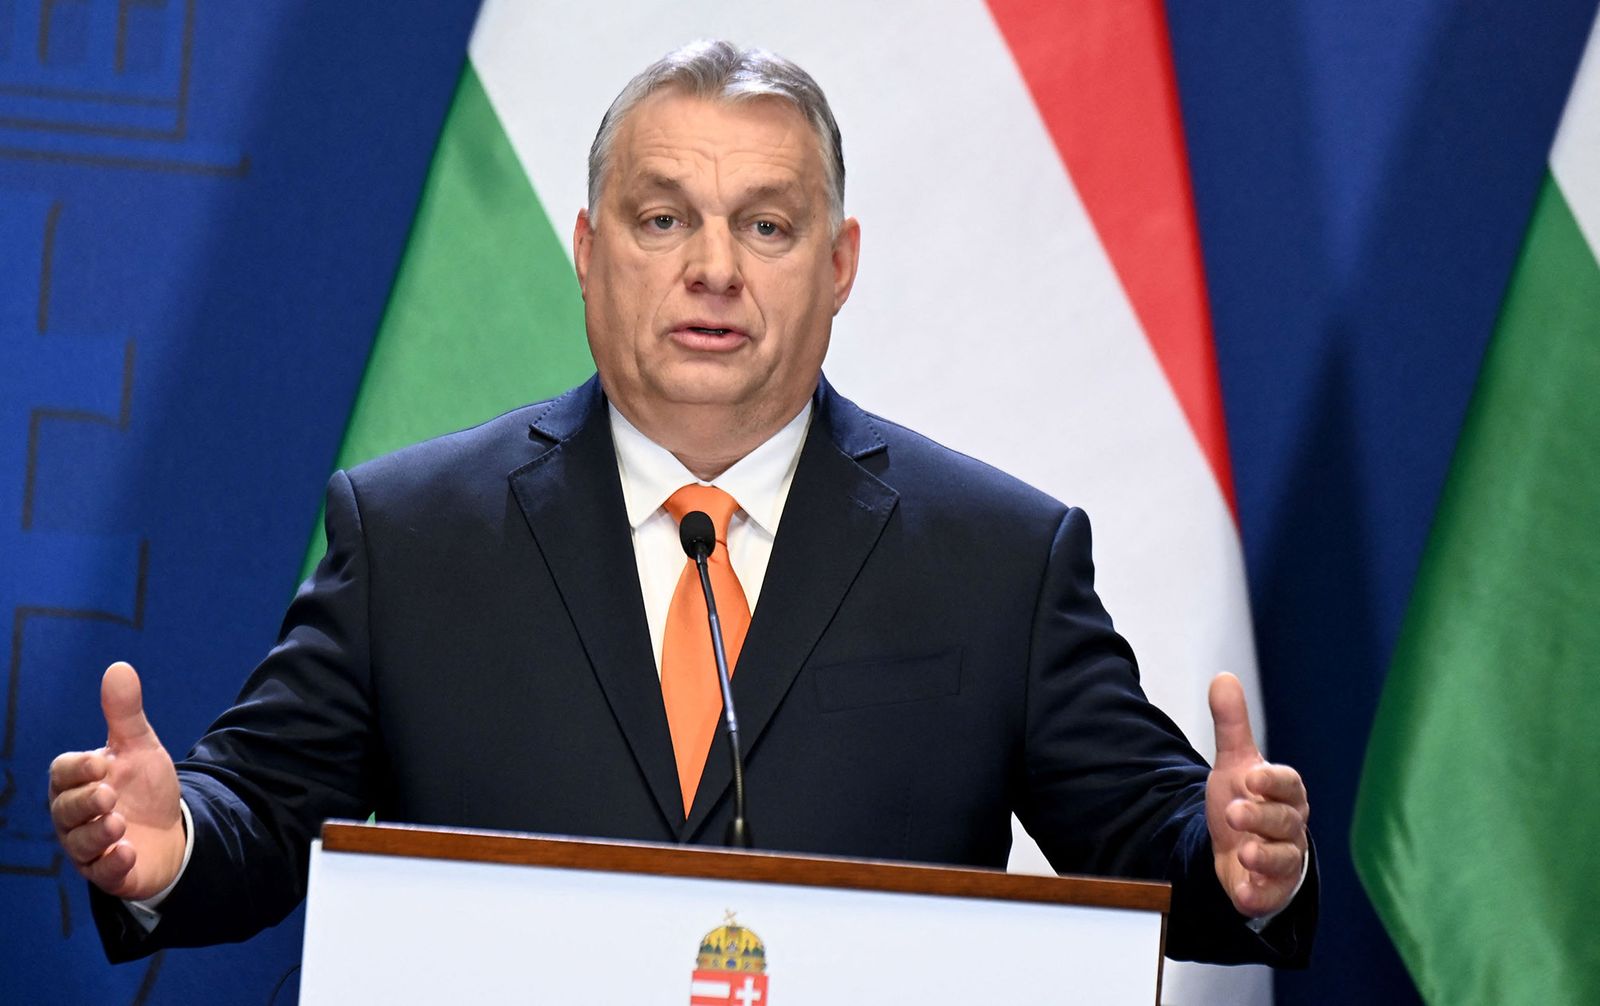 رئيس المجر يدعو الاتحاد الأوروبي لتغيير سياسته مع روسيا بعد فشل العقوبات